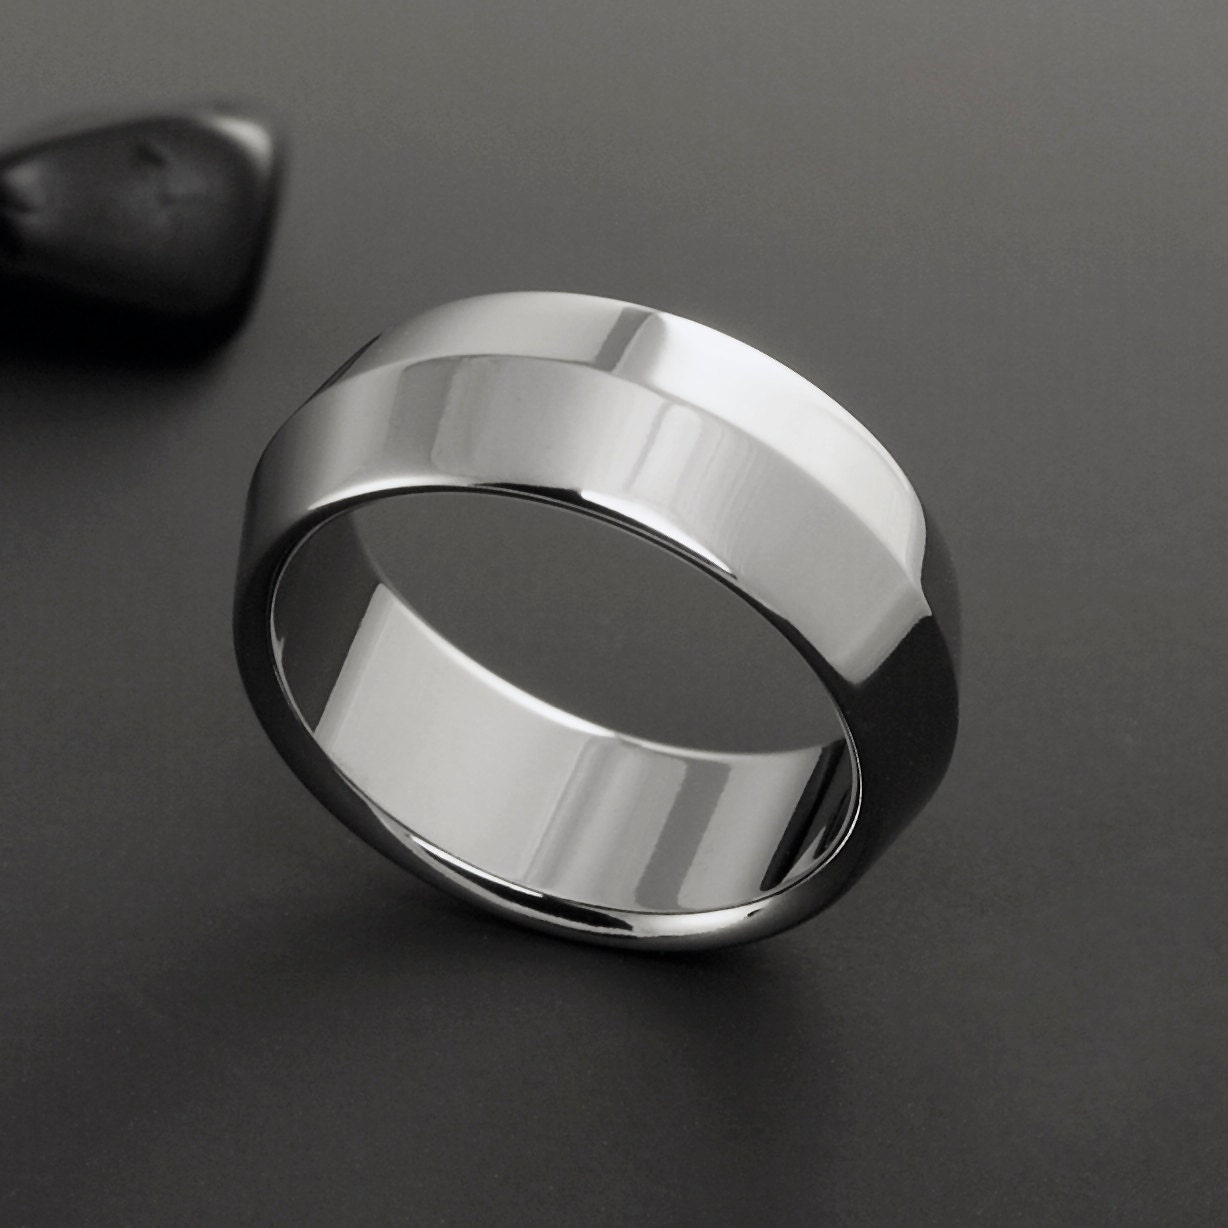 Titanium Wedding Ring in a Simple Elegant Peaked Profile | Etsy